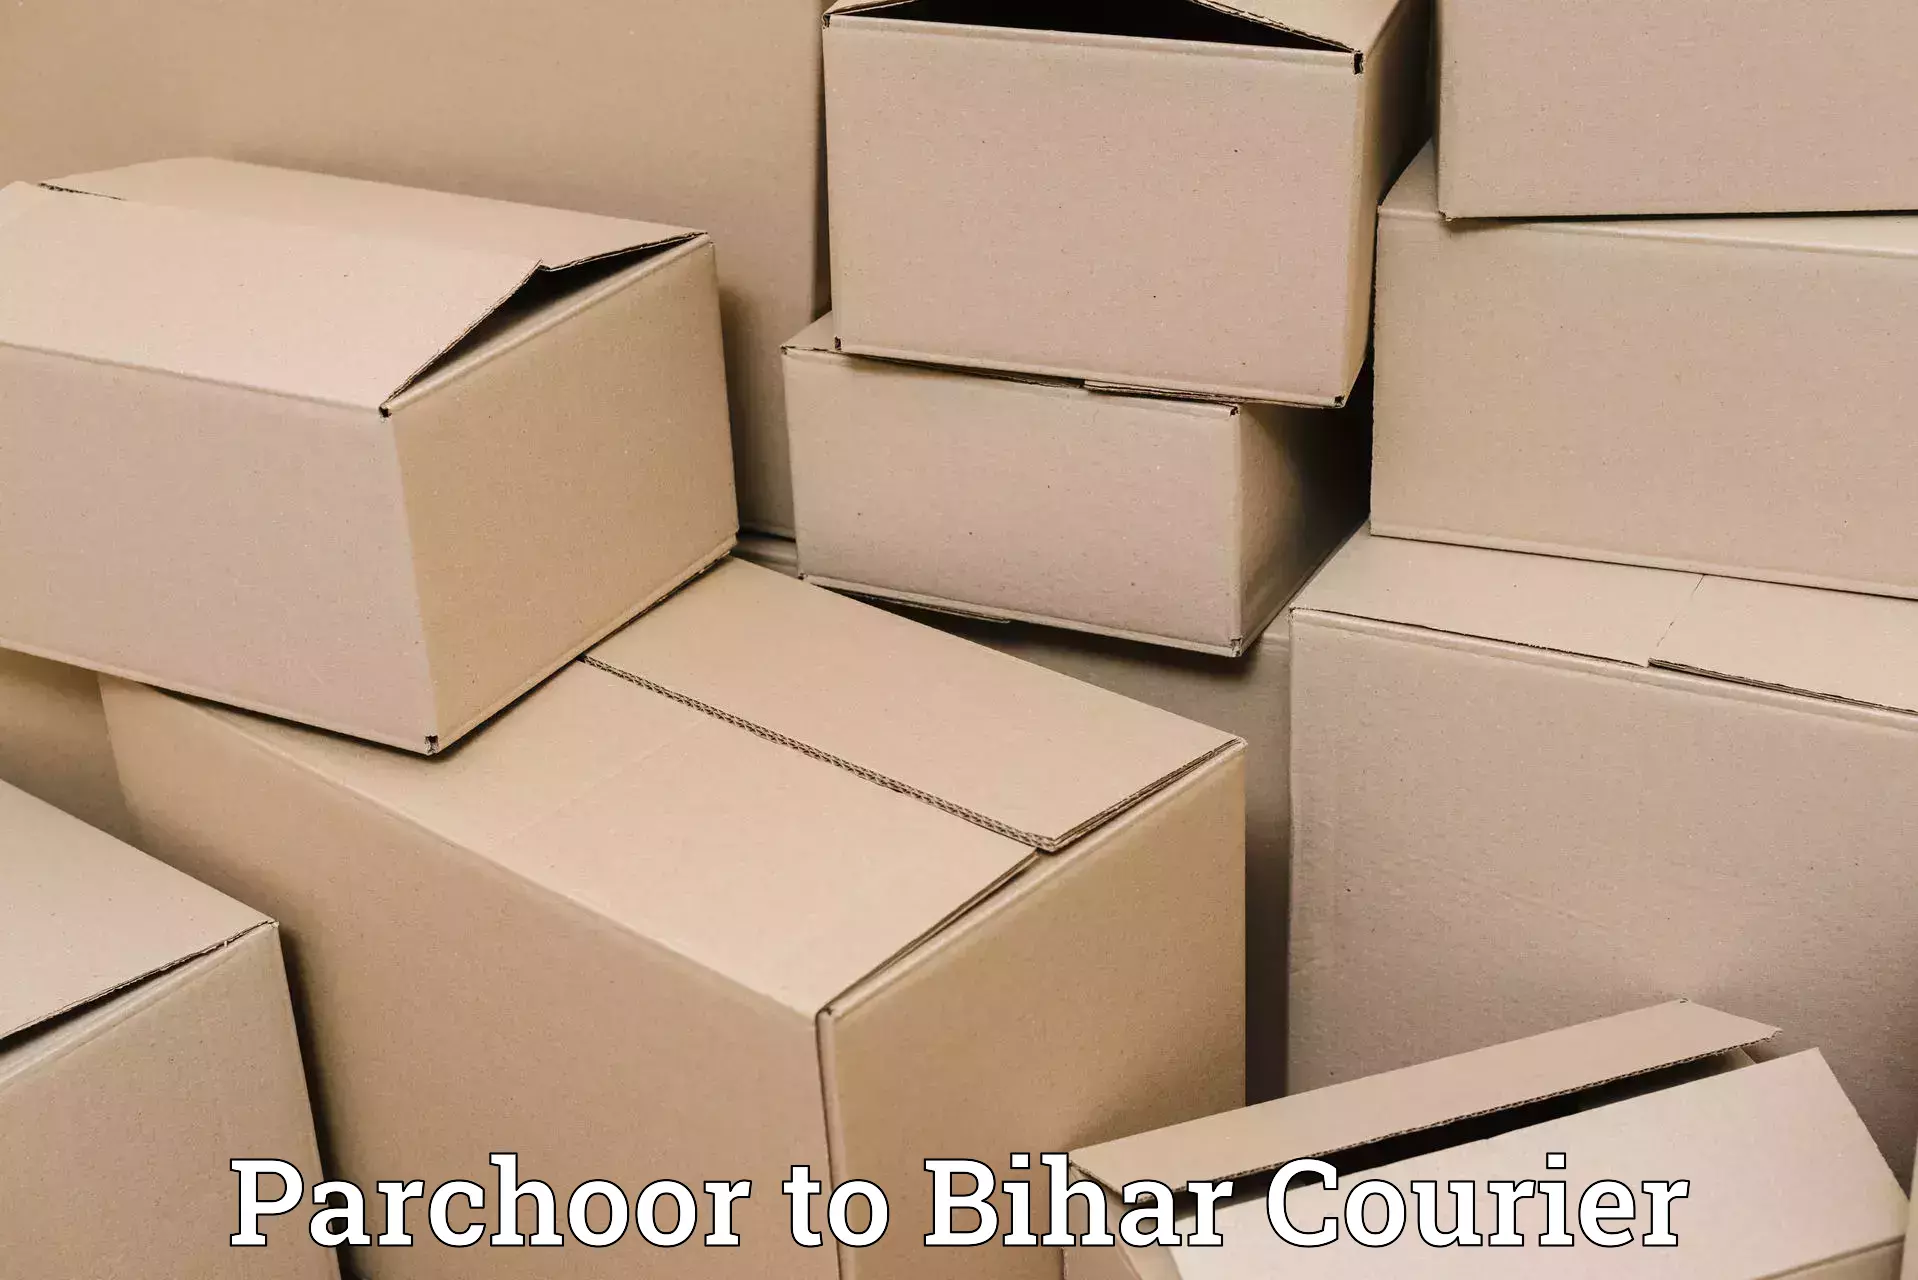 Full-service courier options Parchoor to Bihar